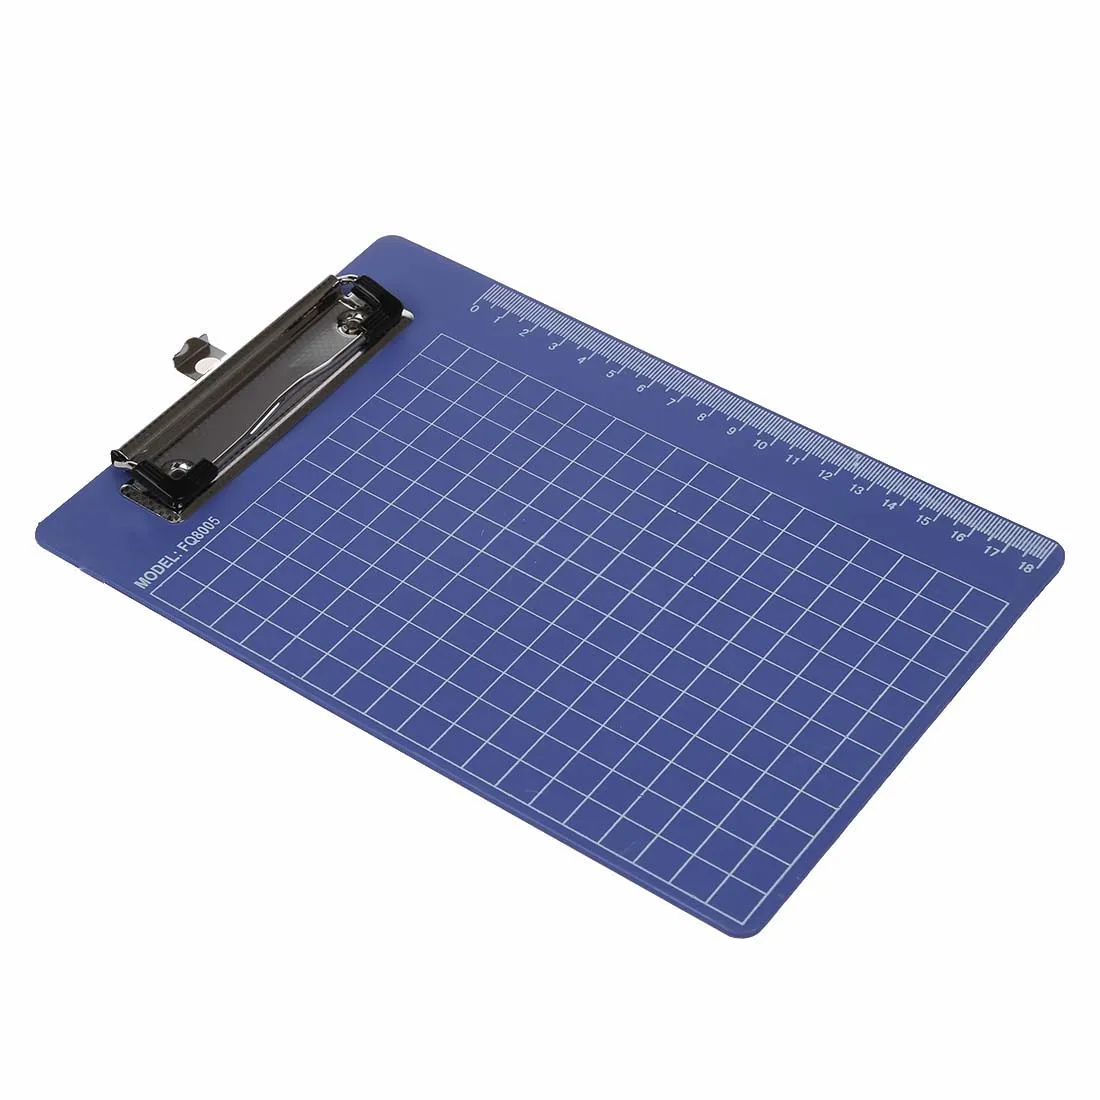 Pad Клип держатель папка пластиковый буфер обмена синий фиолетовый для Бумаги A5